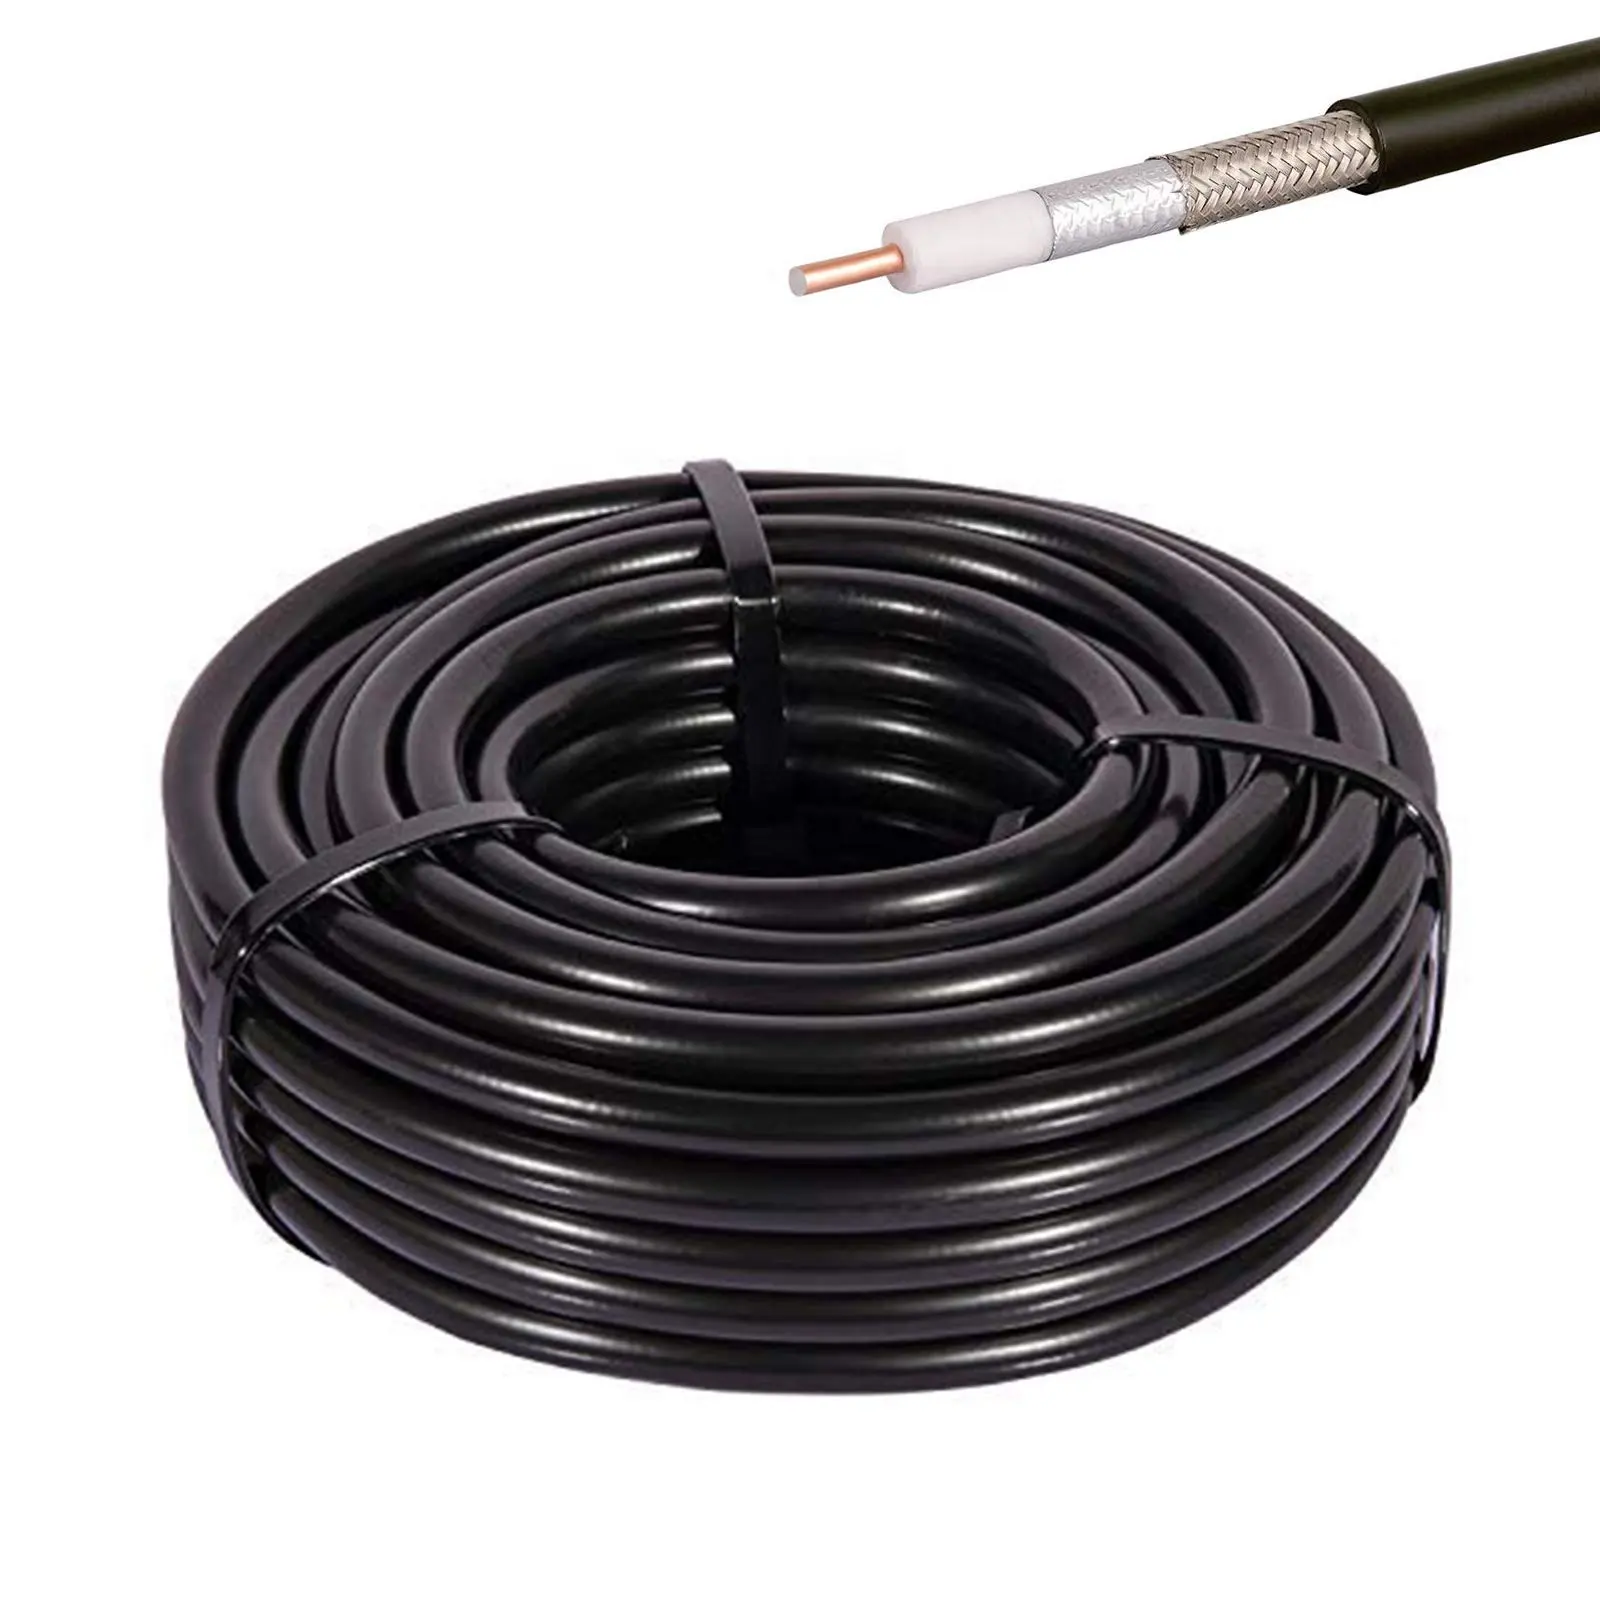 Cable Coaxial Lmr400 de cobre estañado, Lmr 400, Lmr400